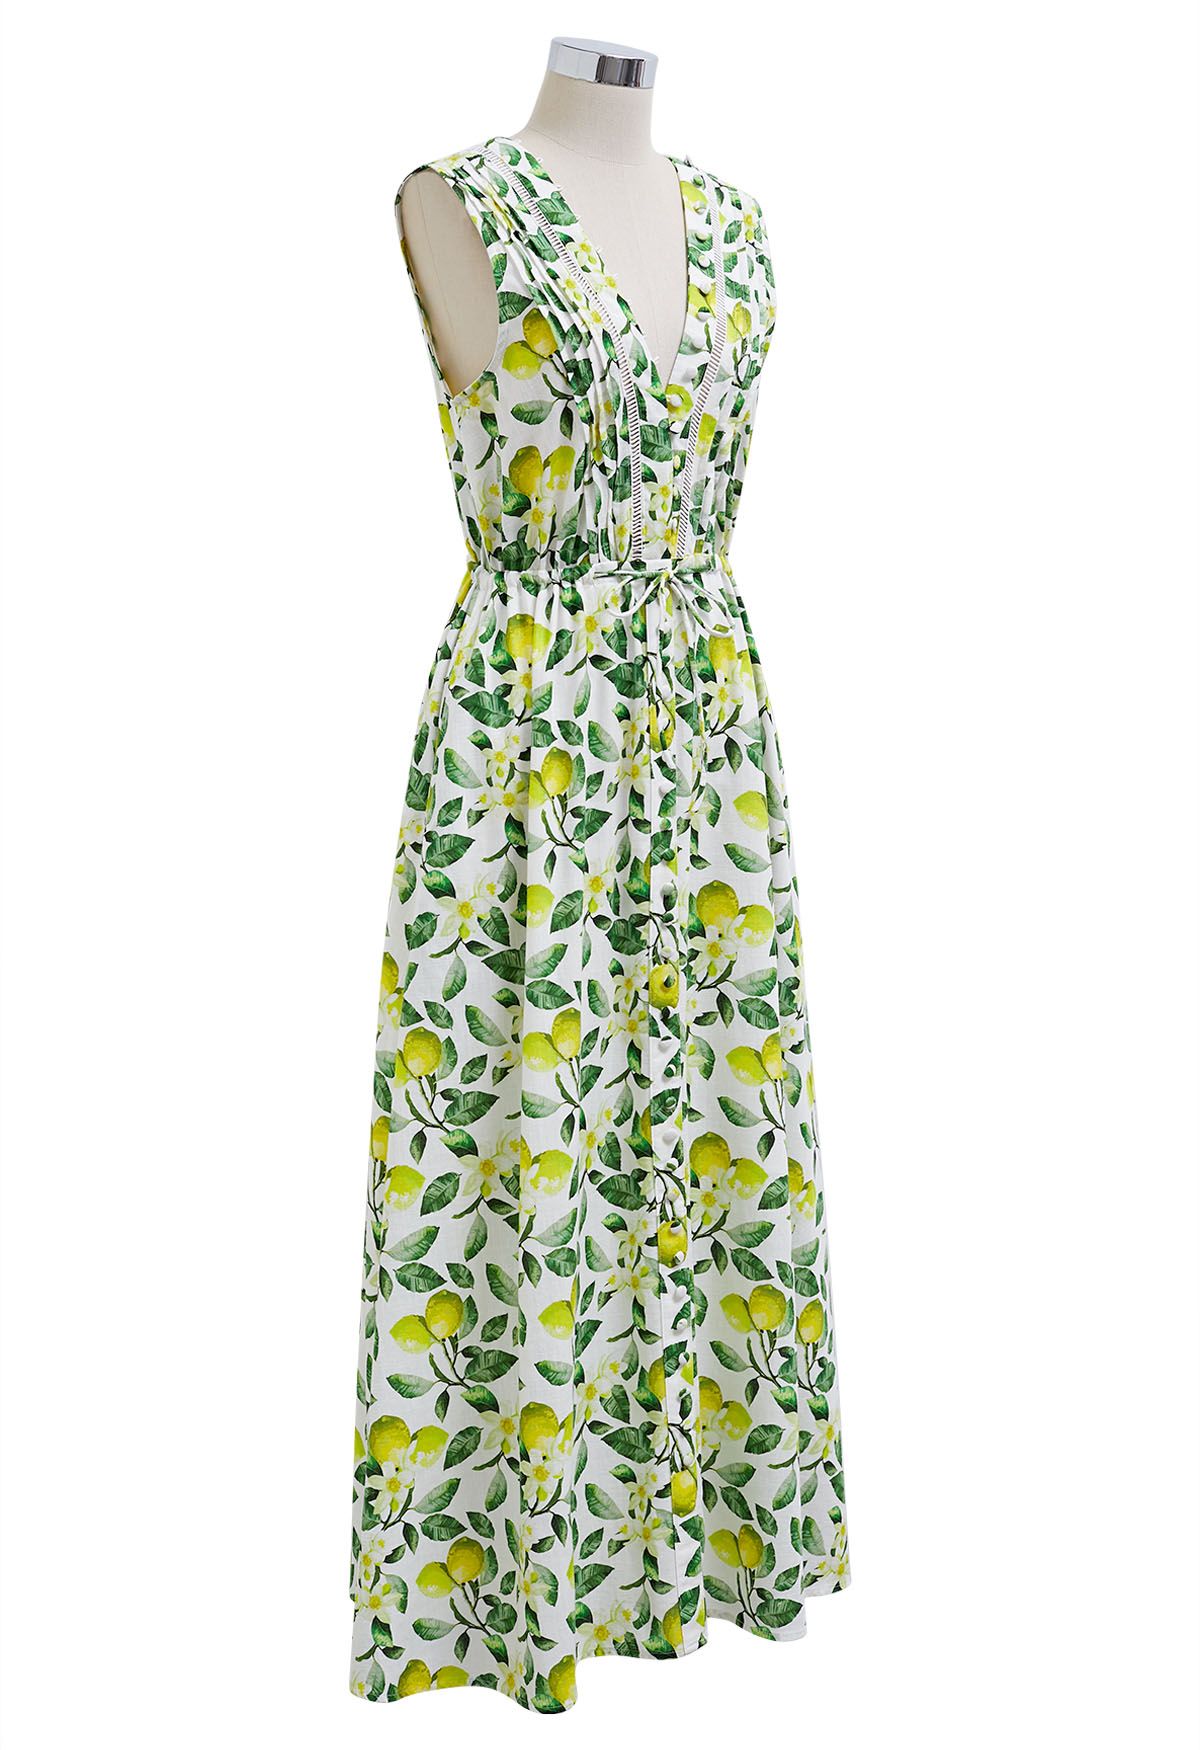 V-Neck Buttoned Sleeveless Dress in Lemon